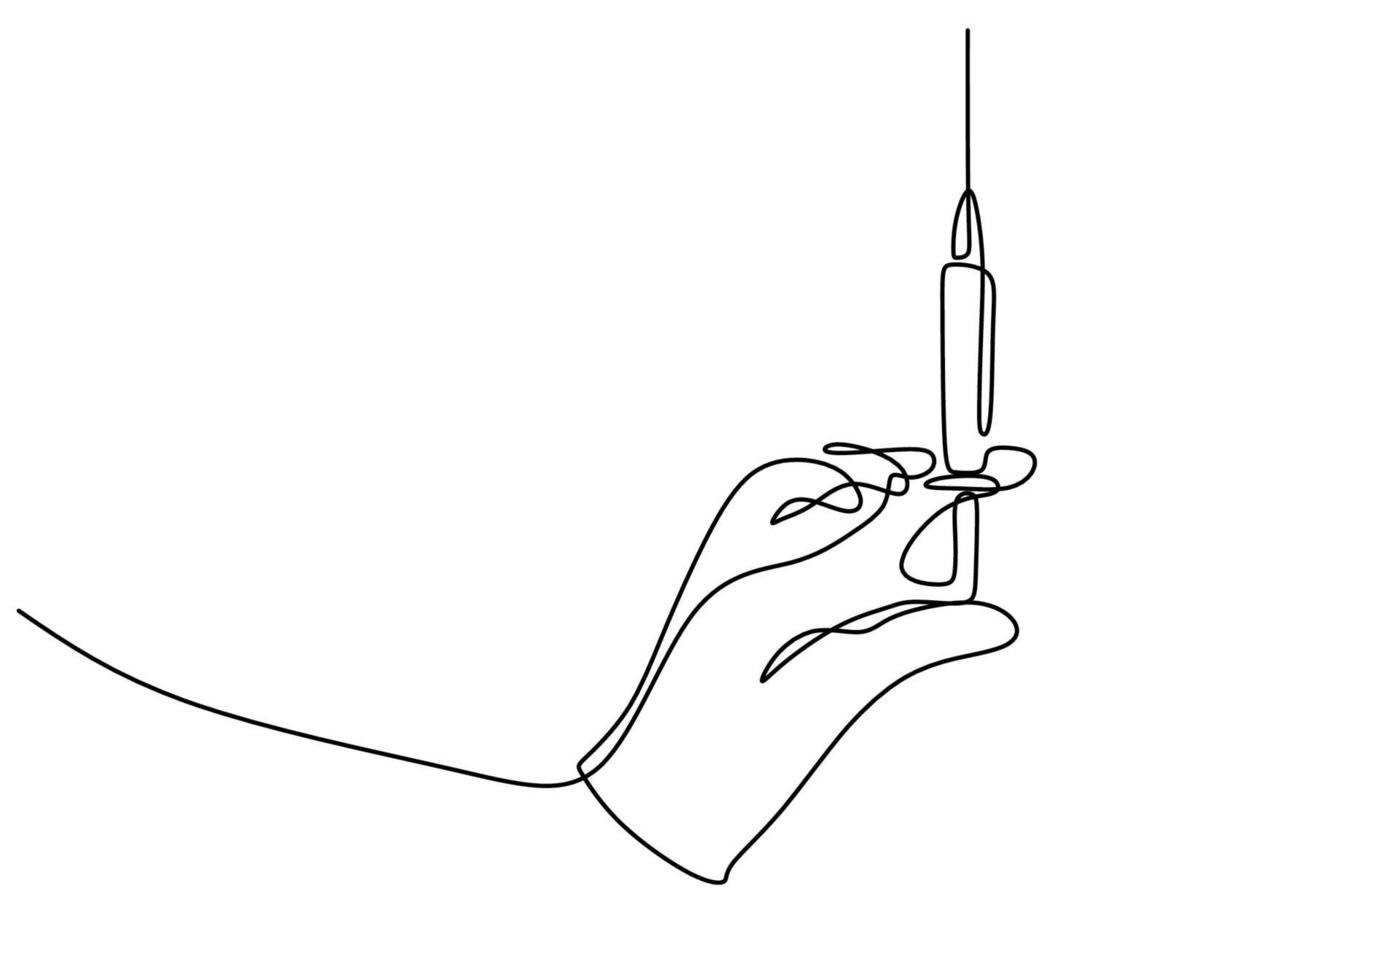 dessin continu d'une ligne d'une main avec injection. illustration de matériel médical ou d & # 39; outils dessinés à la main. une main tenant une aiguille pour le test du vaccin corona isolé sur fond blanc. vecteur